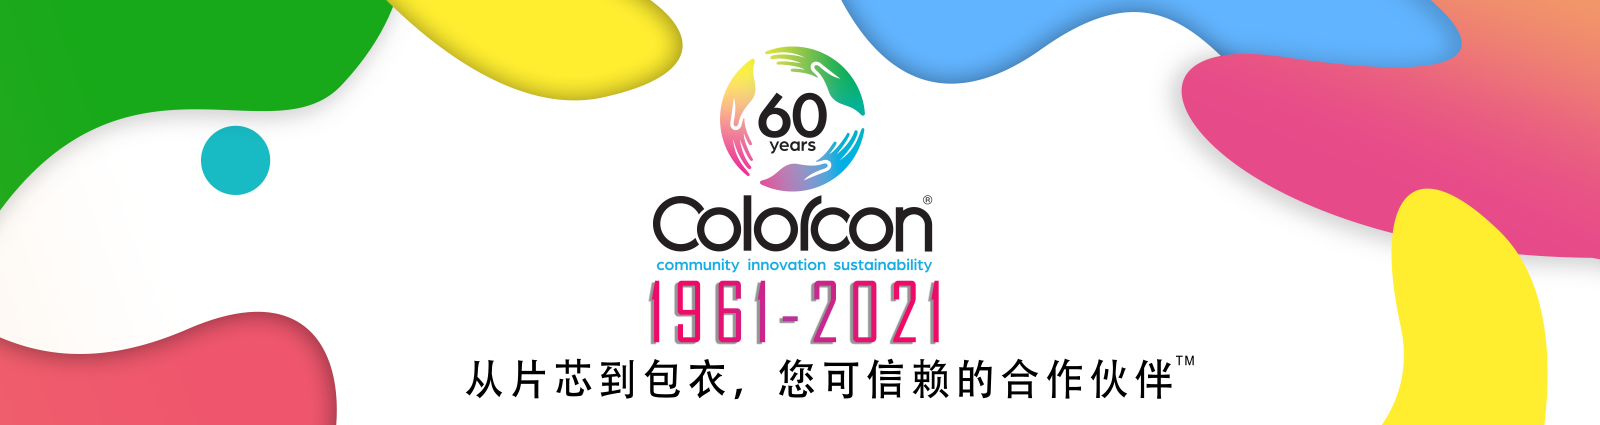 1961-2021卡乐康喜迎60周年